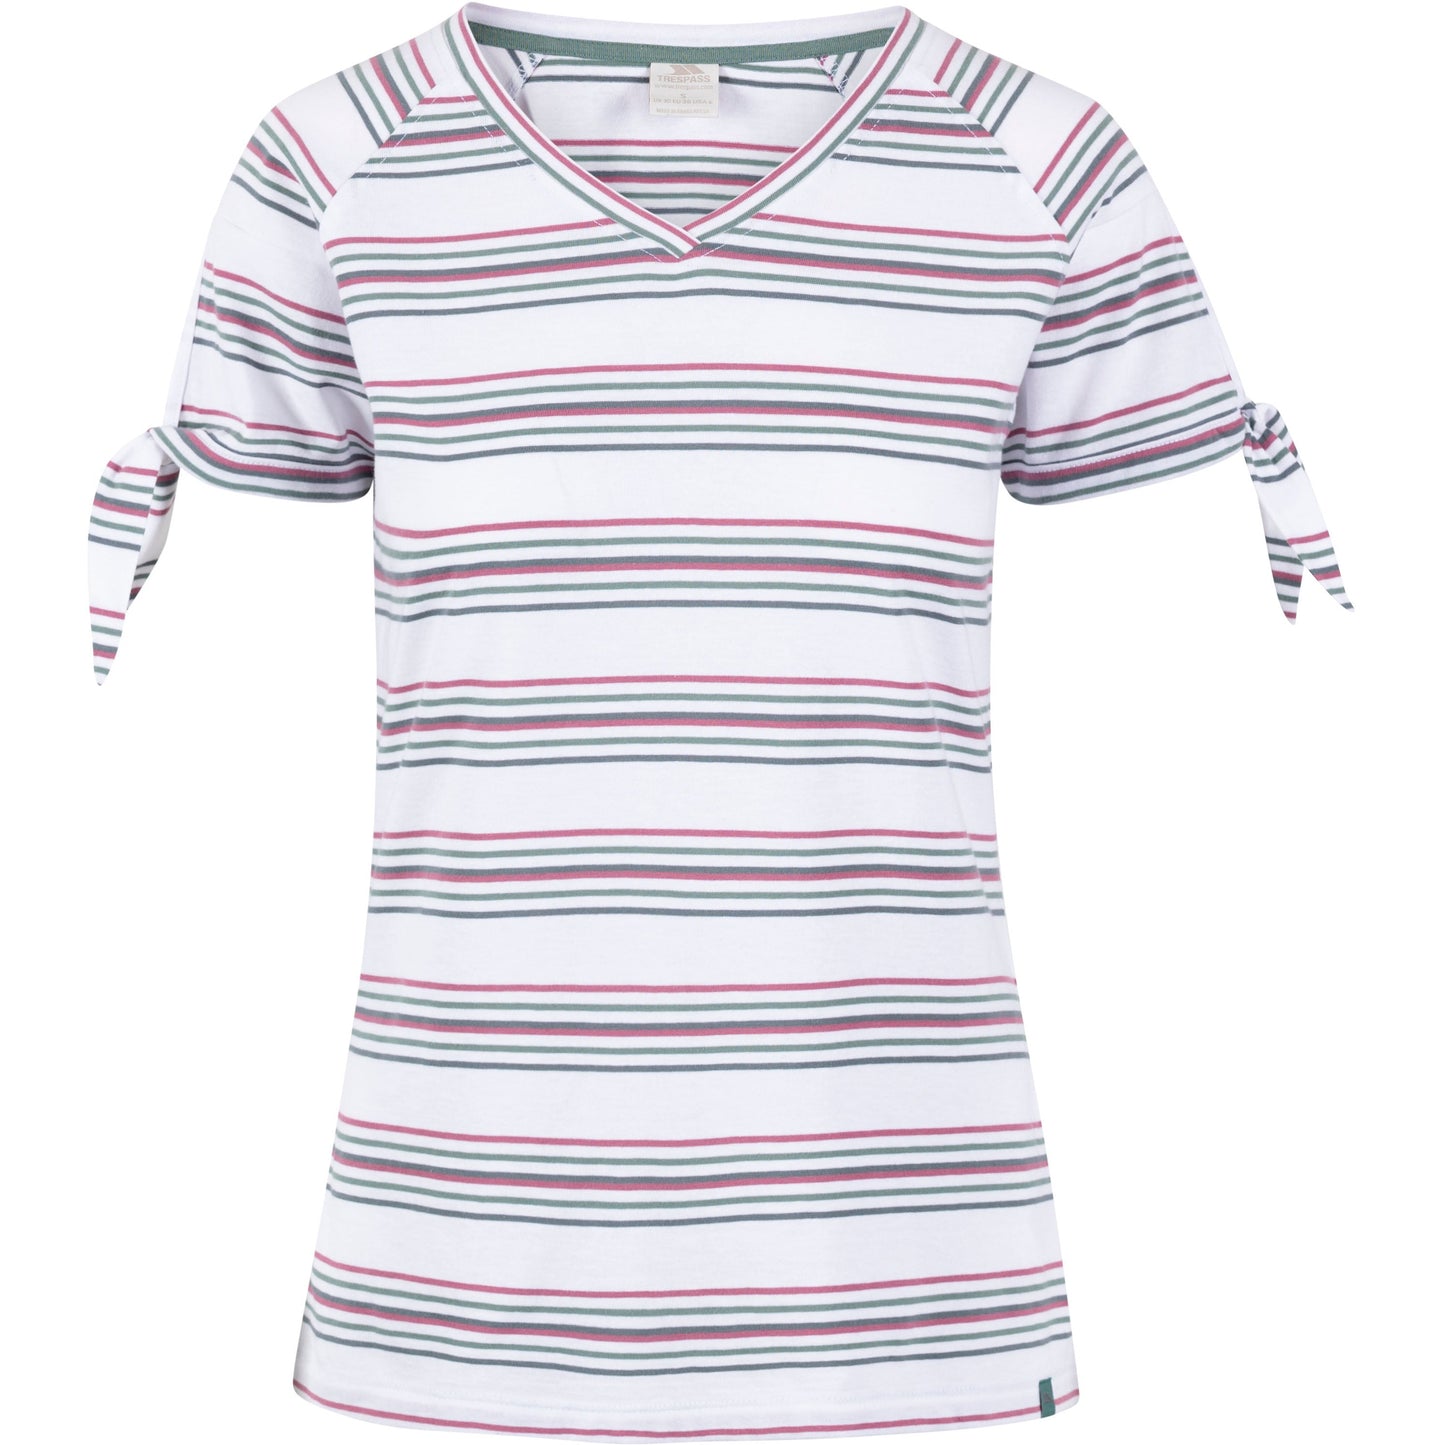 Fernie Women's T-Shirt in Multi Stripe Print